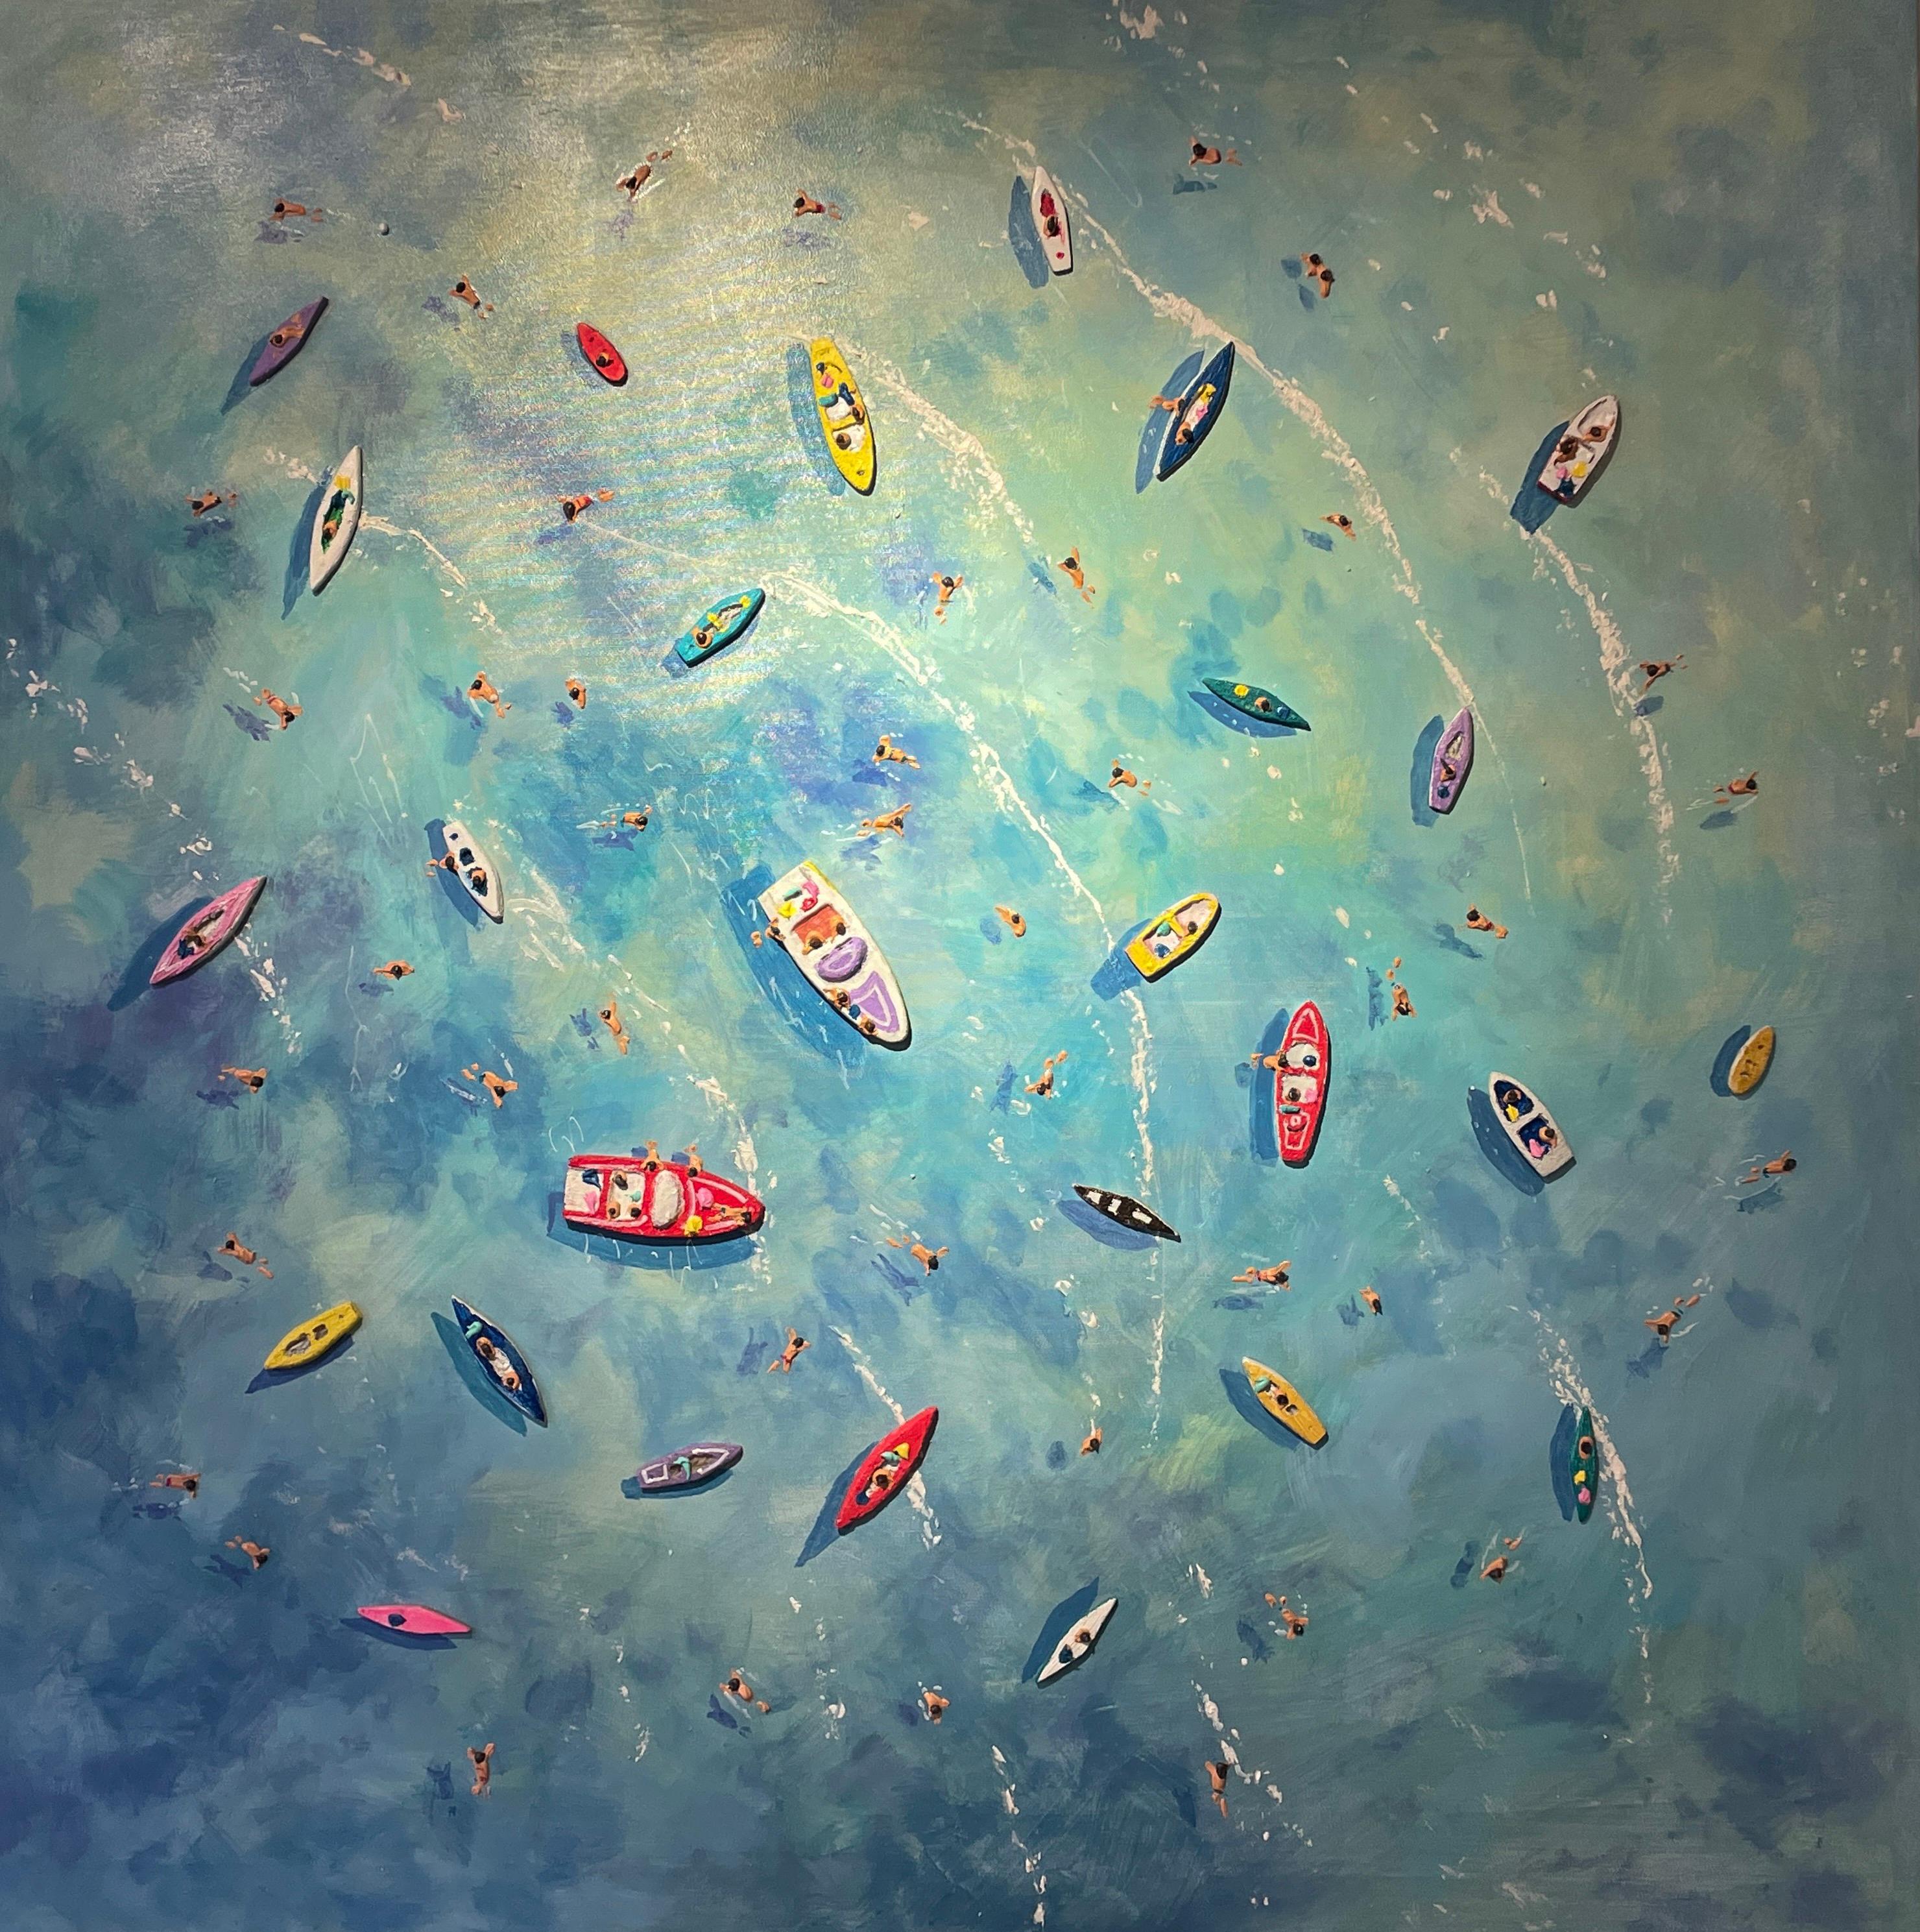 Figurative Painting Max Todd - Peinture contemporaine colorée en 3D « Big Blue » représentant la mer, les bateaux et les personnages